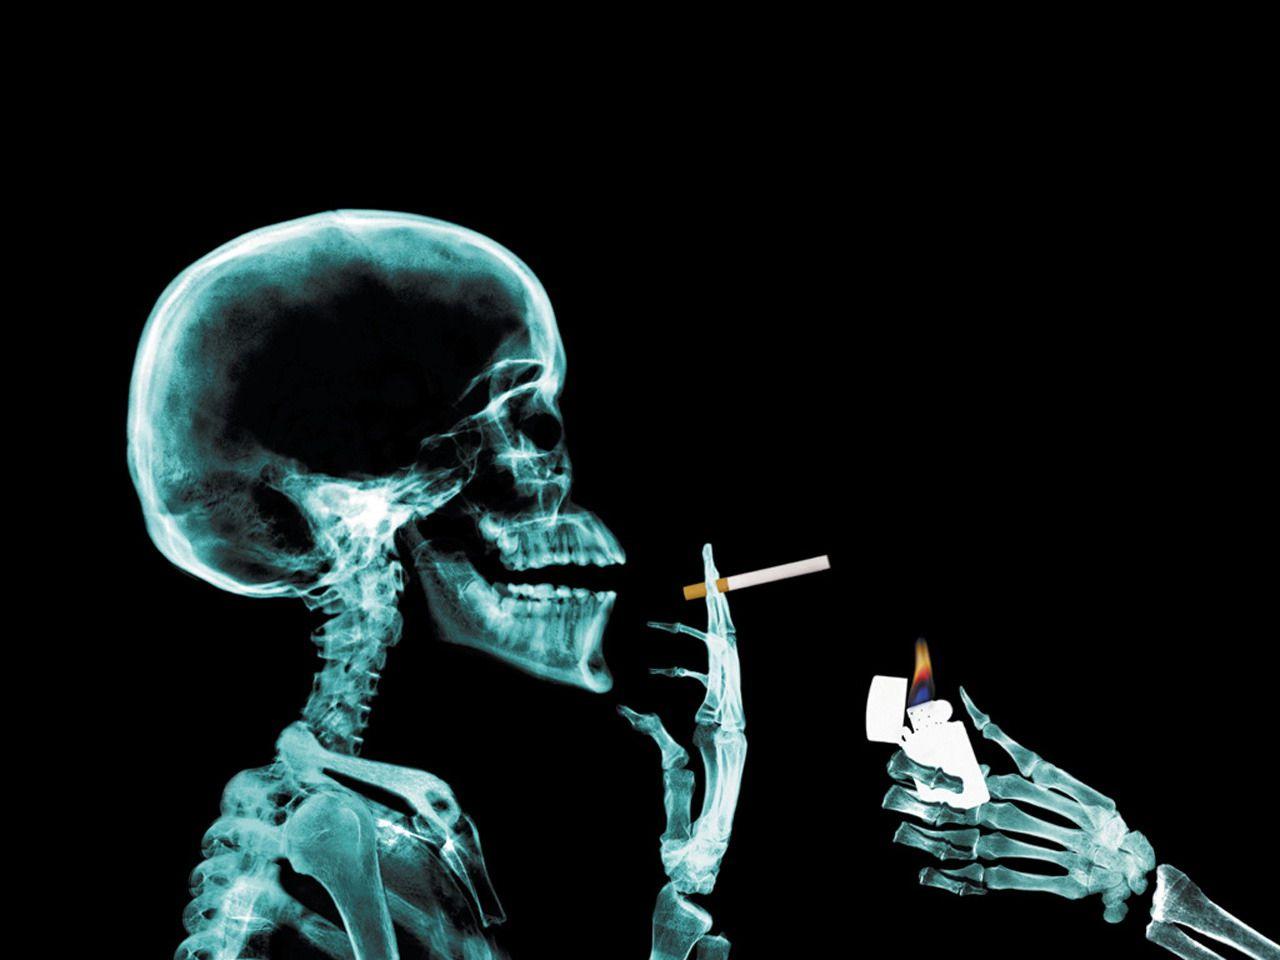 Smoking Skull Funny Horror Wallpaper Image Wallpaper. High